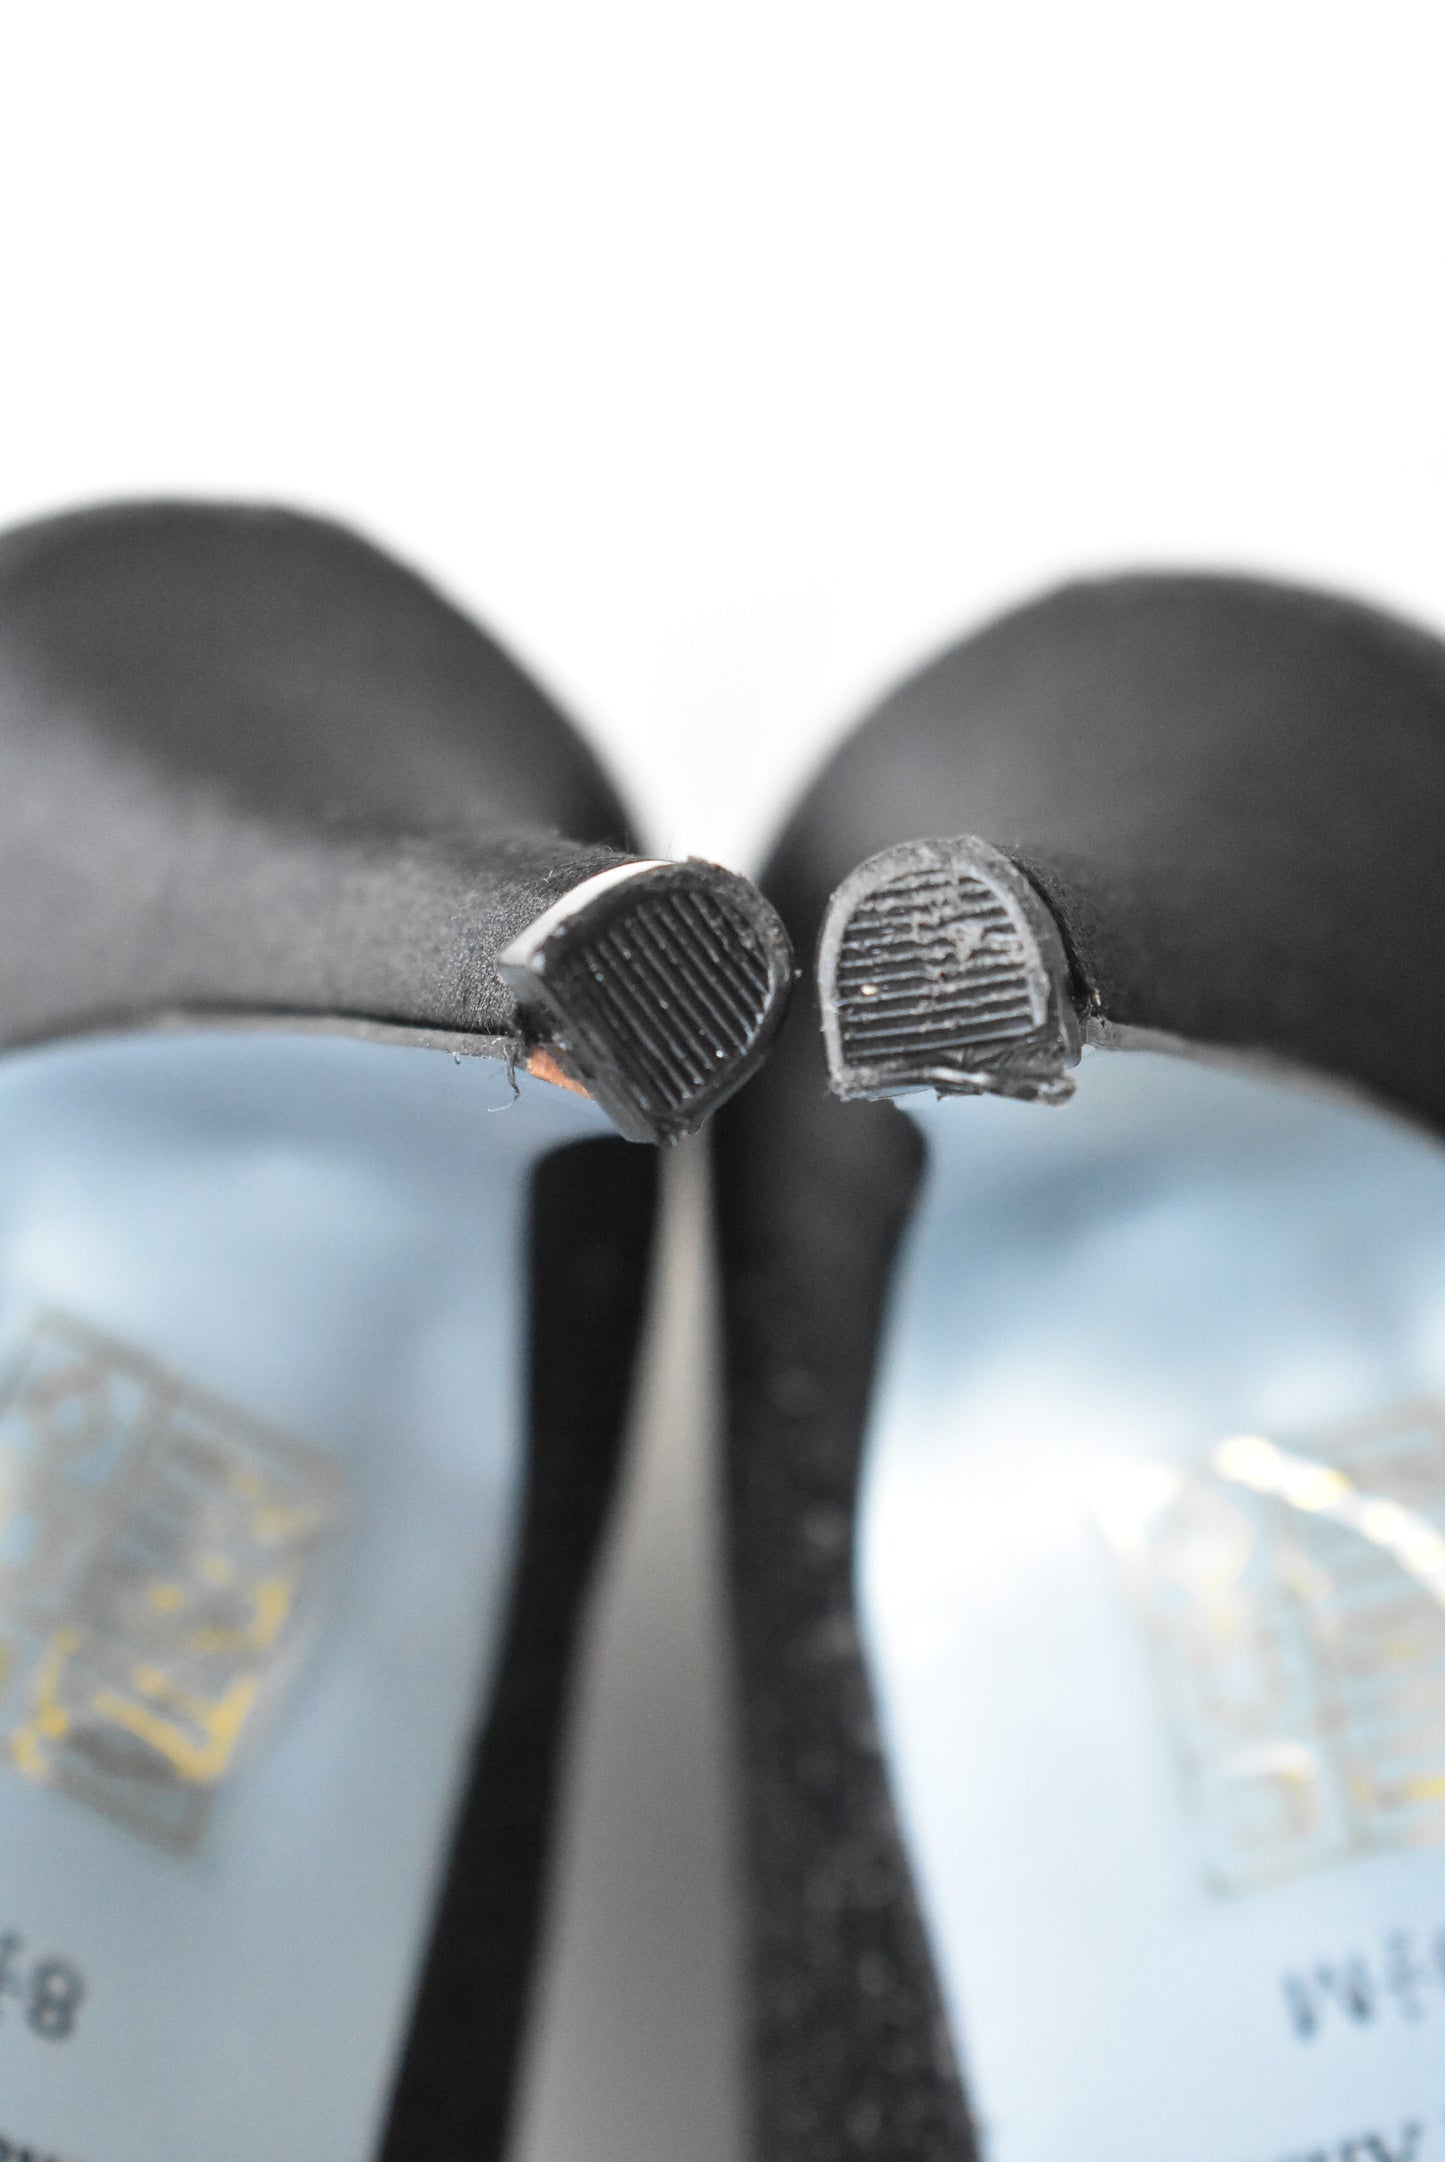 Isabella Anselmi sparkly peep toe shoes. 8.5